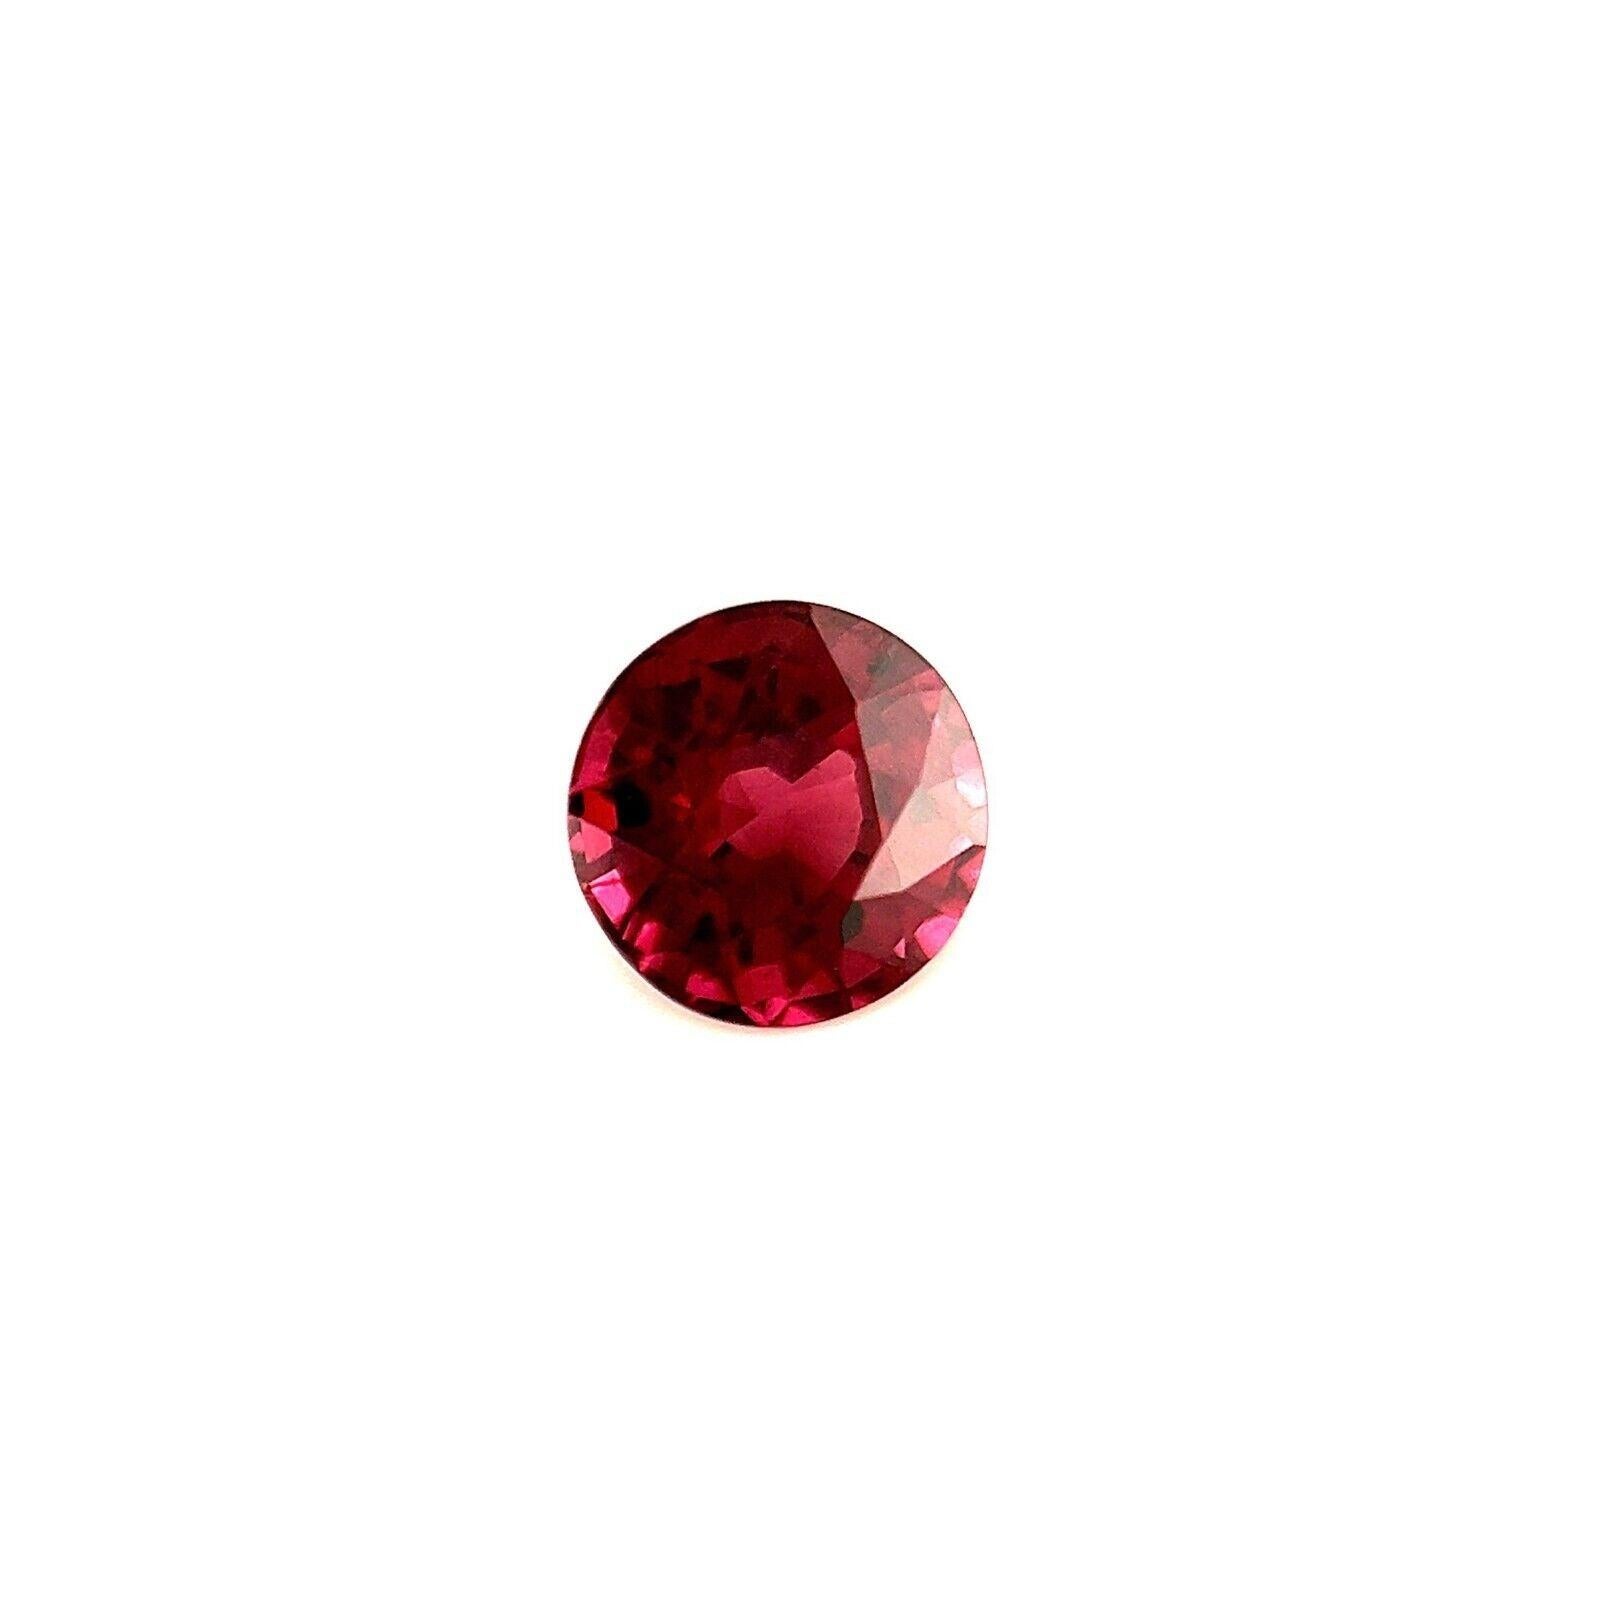 1,29ct Vivid Purple Pink Rhodolith Granat Rund Brillantschliff Edelstein 6mm

Natürlicher lebendiger rosa lila Rhodolith-Granat Edelstein.
1,29 Karat mit einer schönen lebendigen violett-rosa Farbe und sehr guter Reinheit, ein sehr sauberer